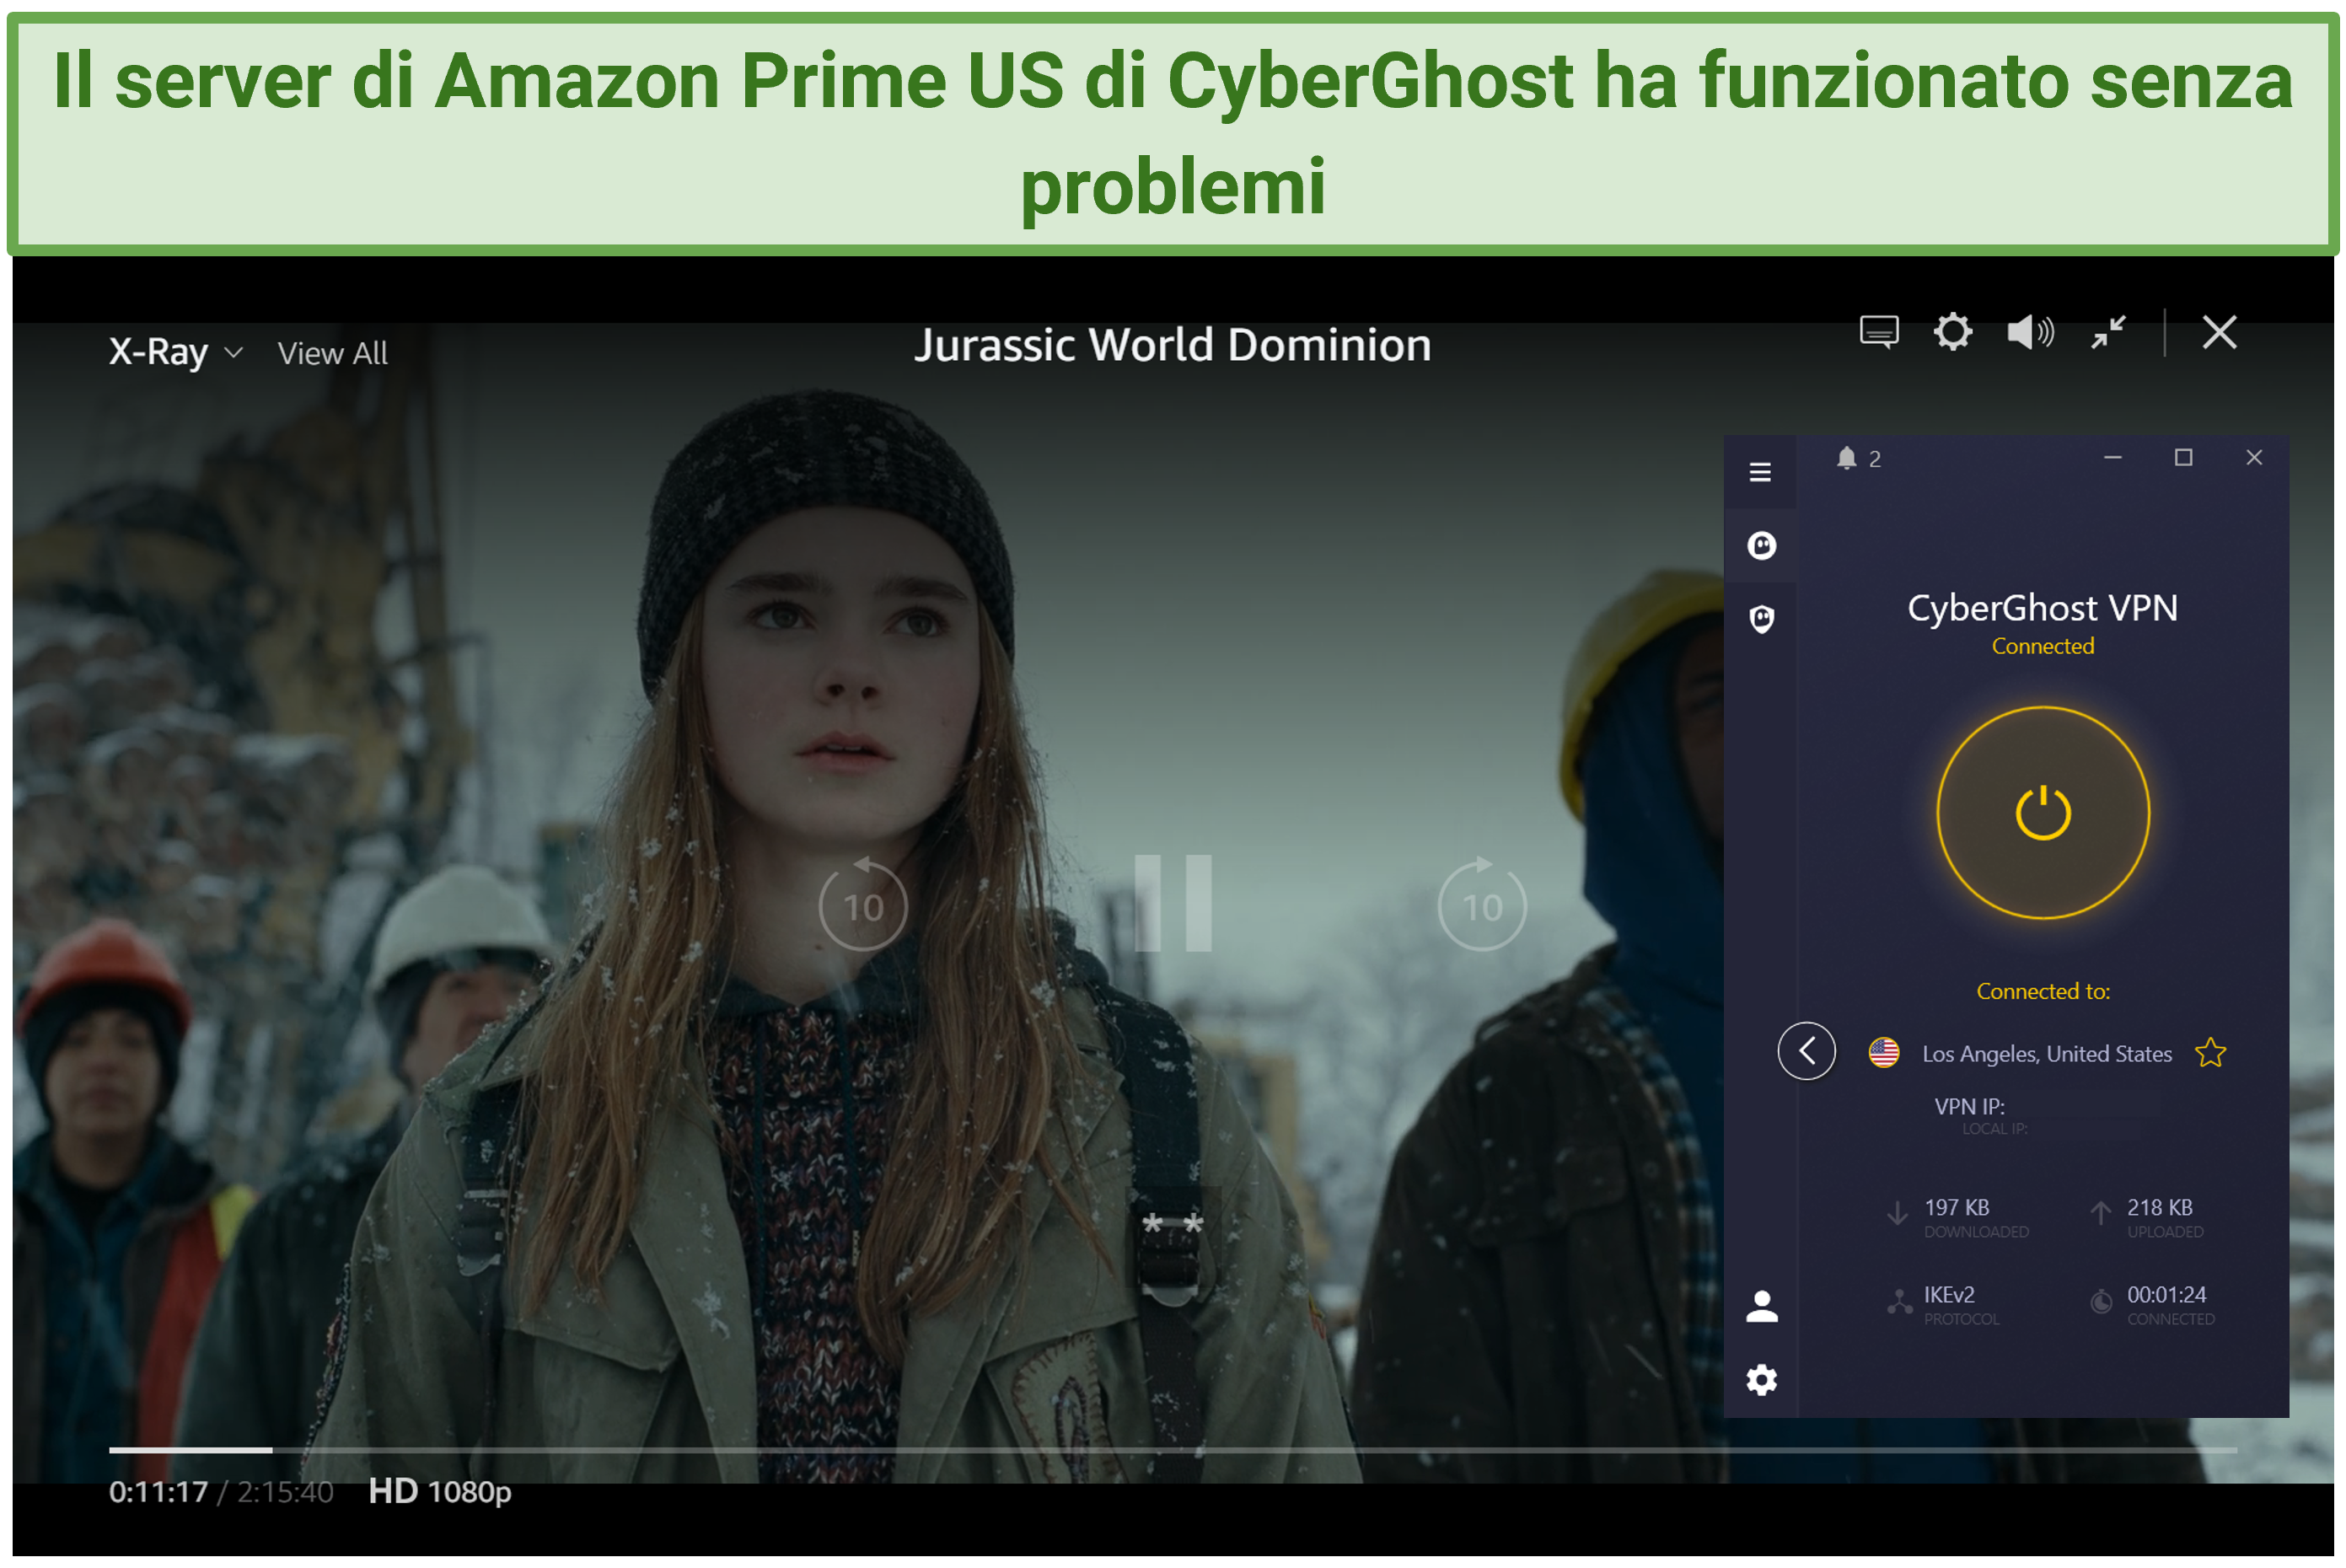 Screenshot di Jurassic World Dominion in streaming su Prime Video US con CyberGhost connesso